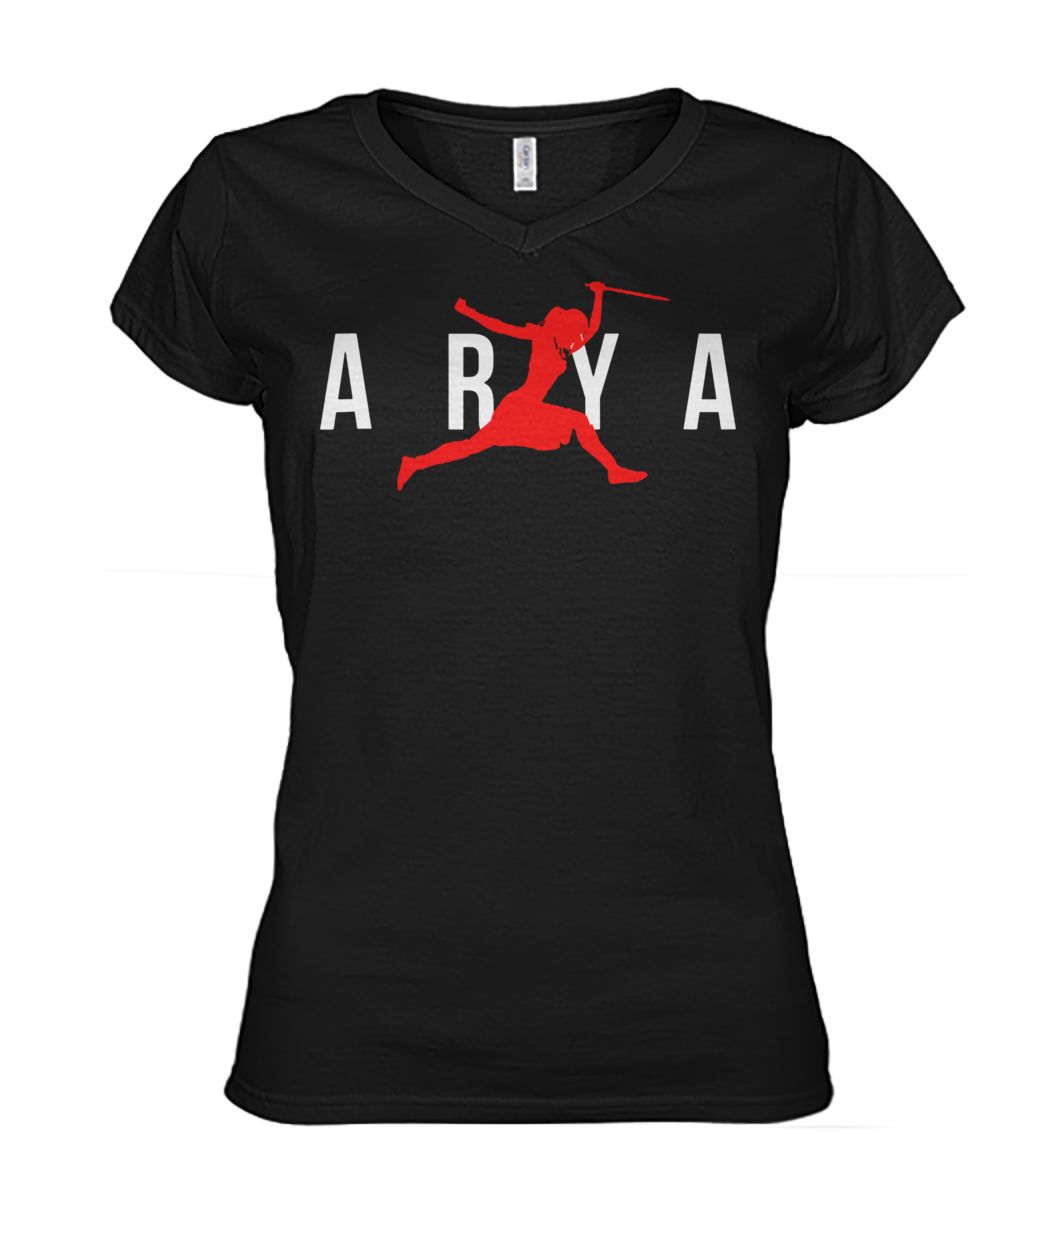 Air arya stark game of thrones women's v-neck